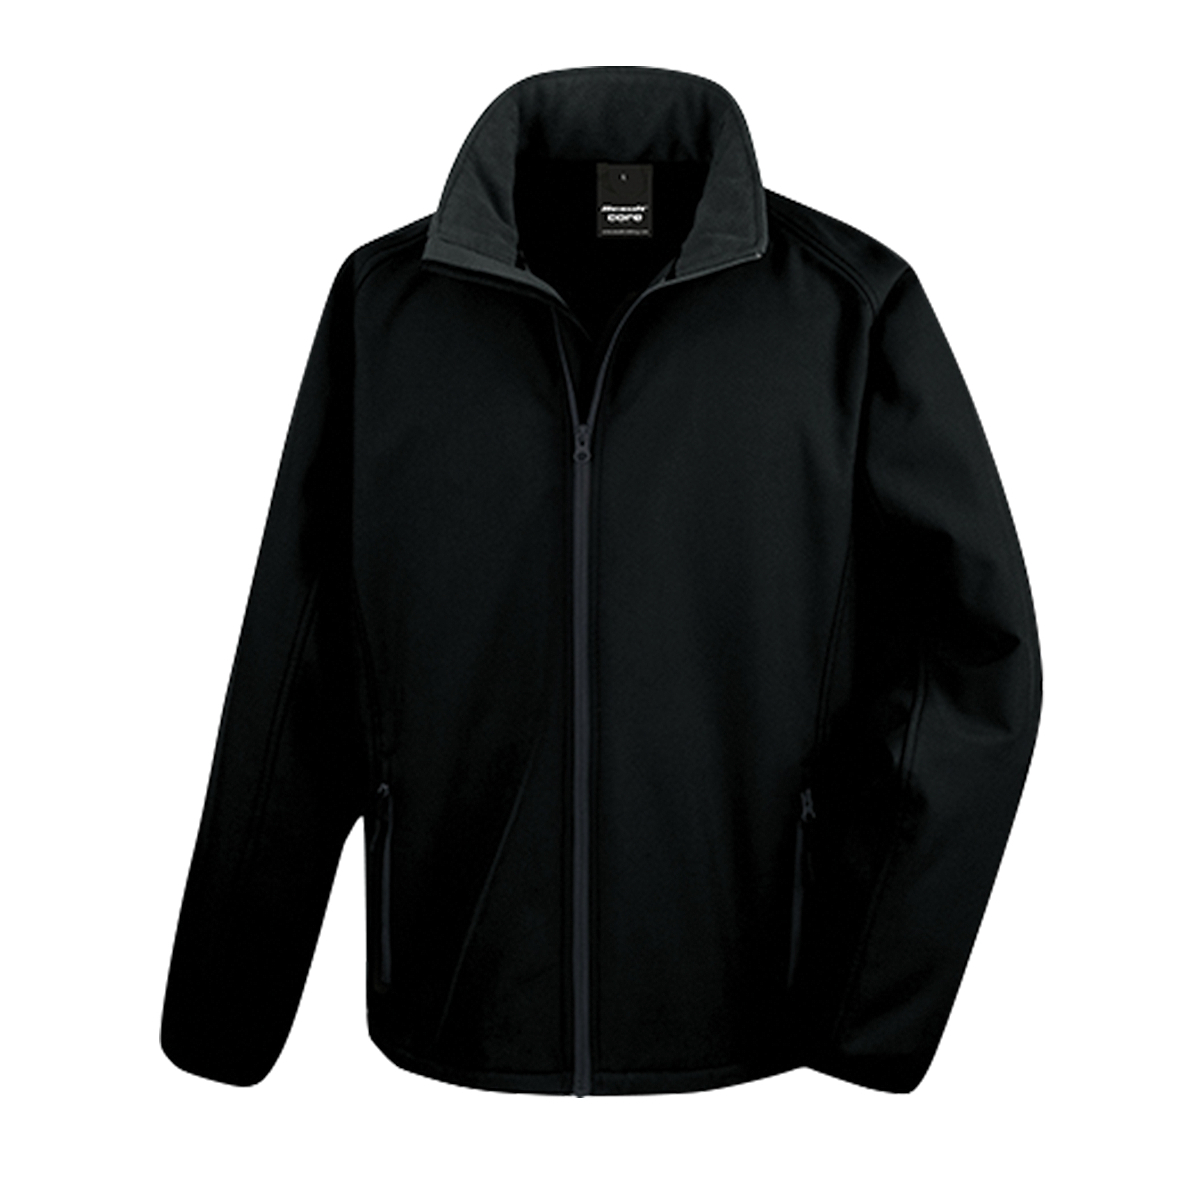 Softshellová pánská bunda Alex Fox Nebraska - černá, XL